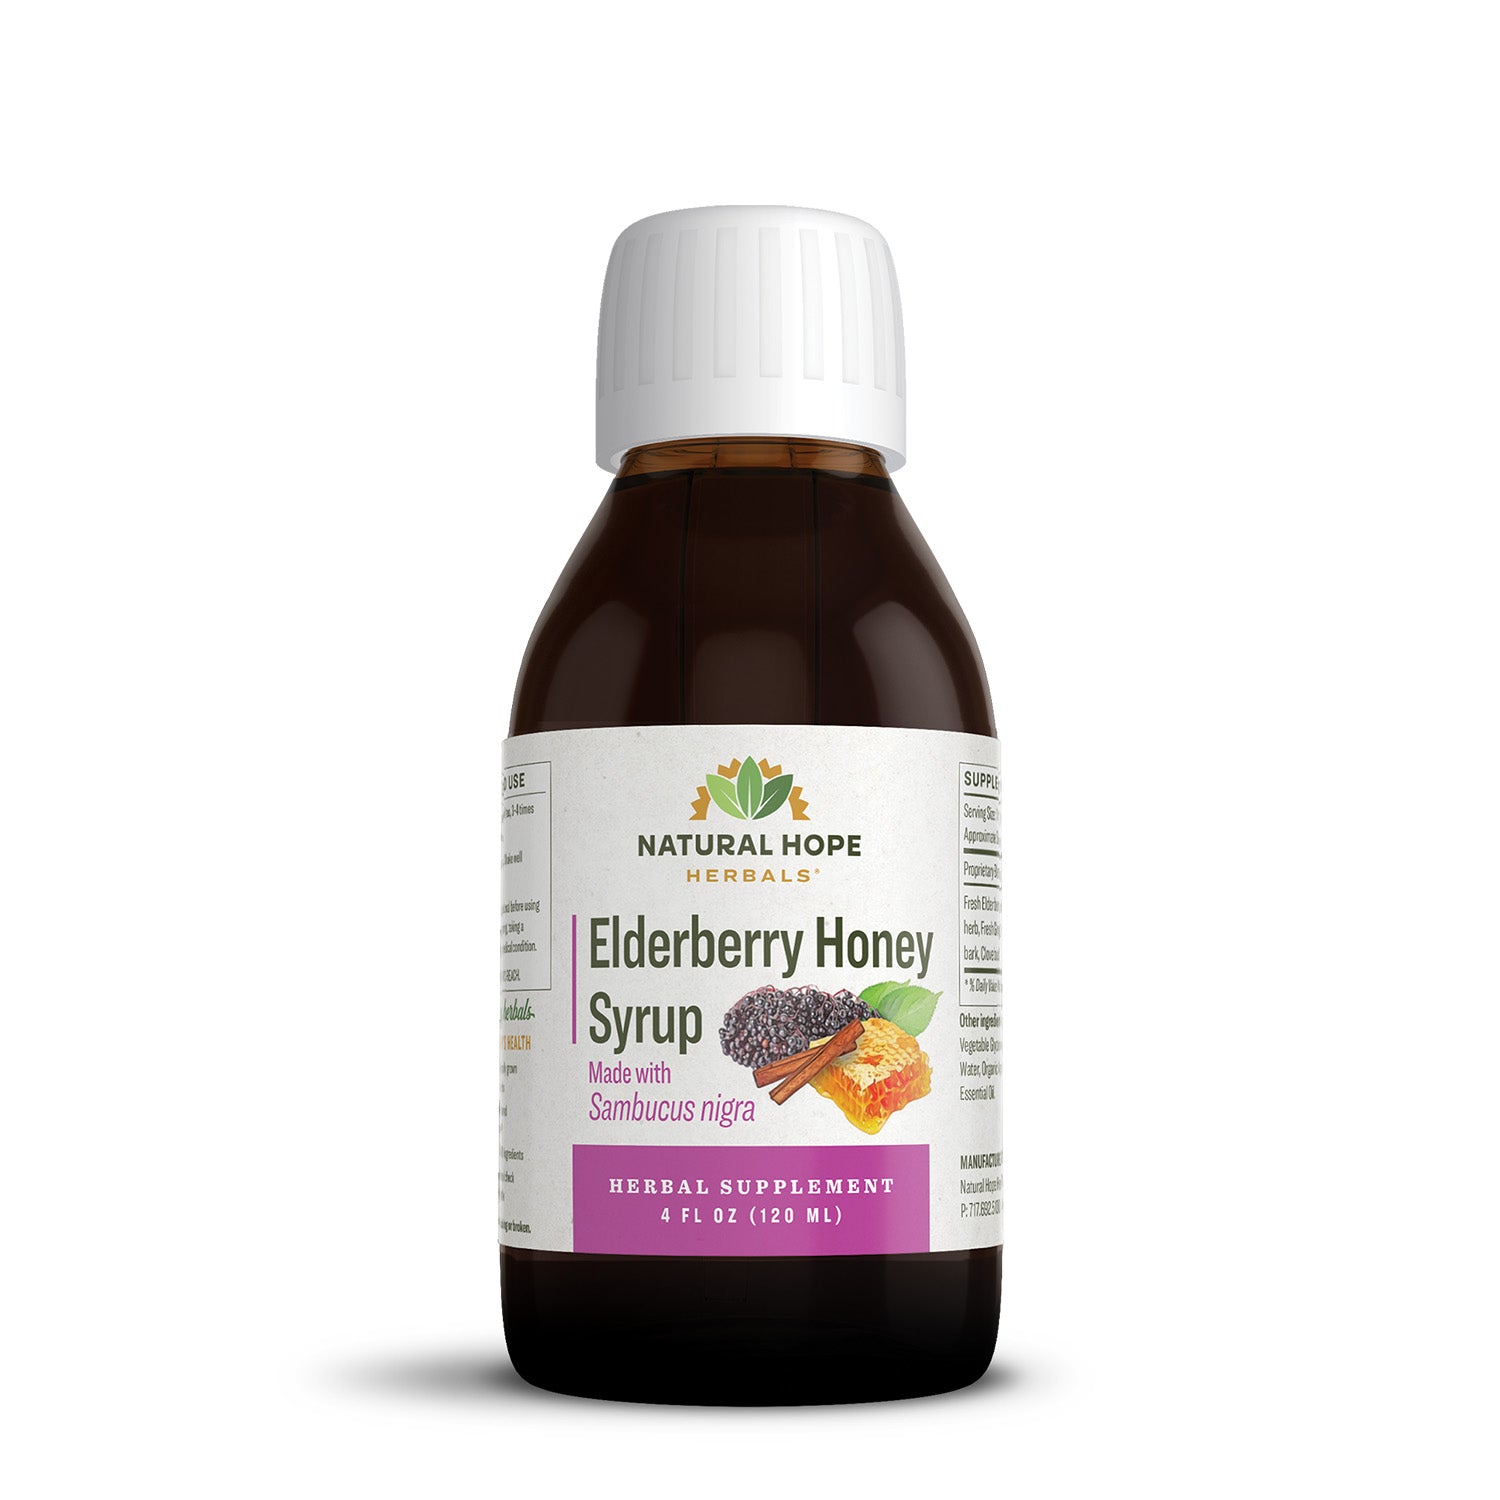 Elderberry Honey Syrup - Natural Hope Herbals